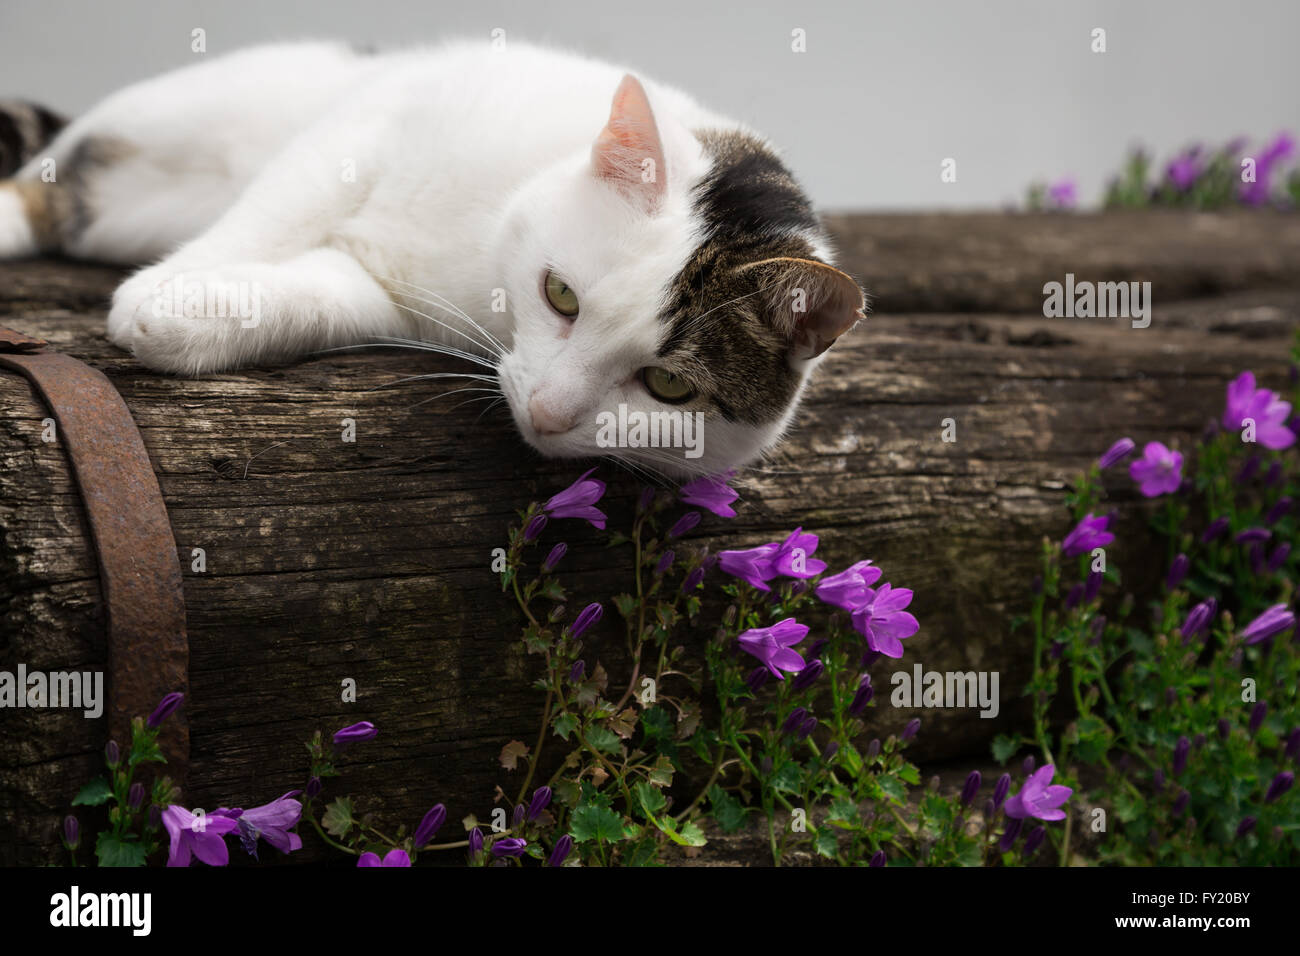 Image en couleur d'un chat tigré gris et blanc couché sur un banc en bois dans un jardin près de quelques petites fleurs violet / rose. Banque D'Images